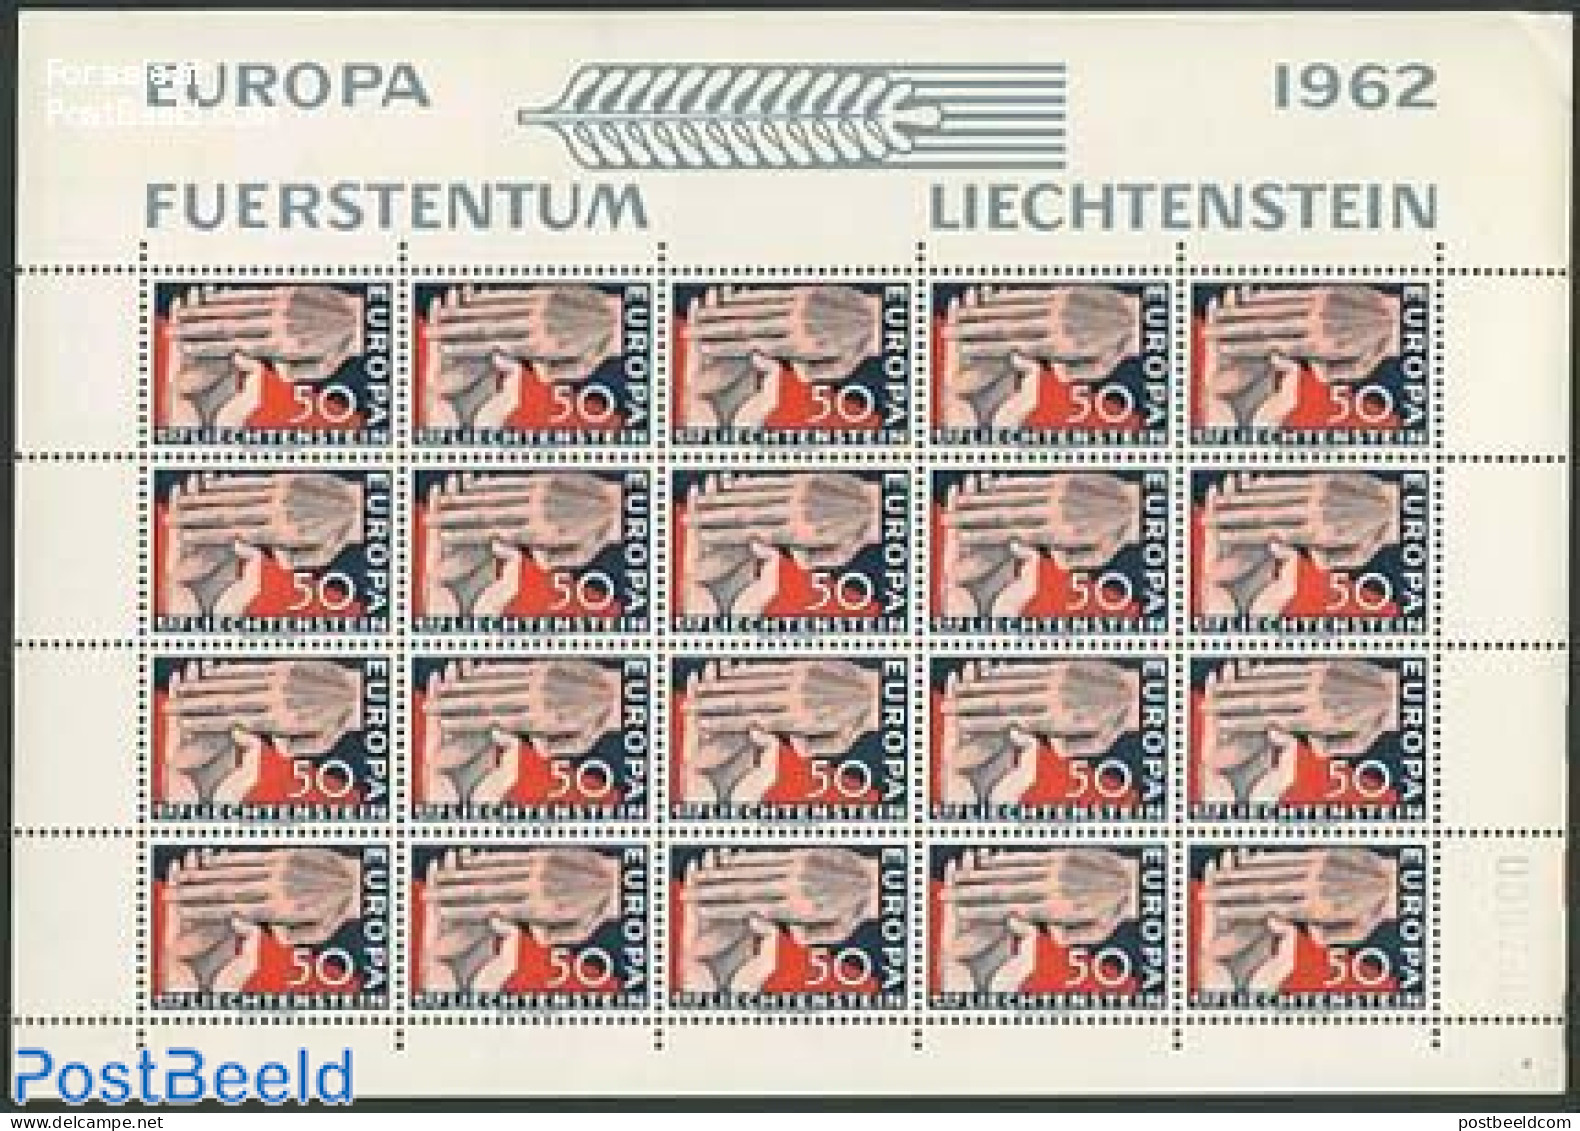 Liechtenstein 1962 Europa 1v, M/s, Mint NH, History - Europa (cept) - Ongebruikt